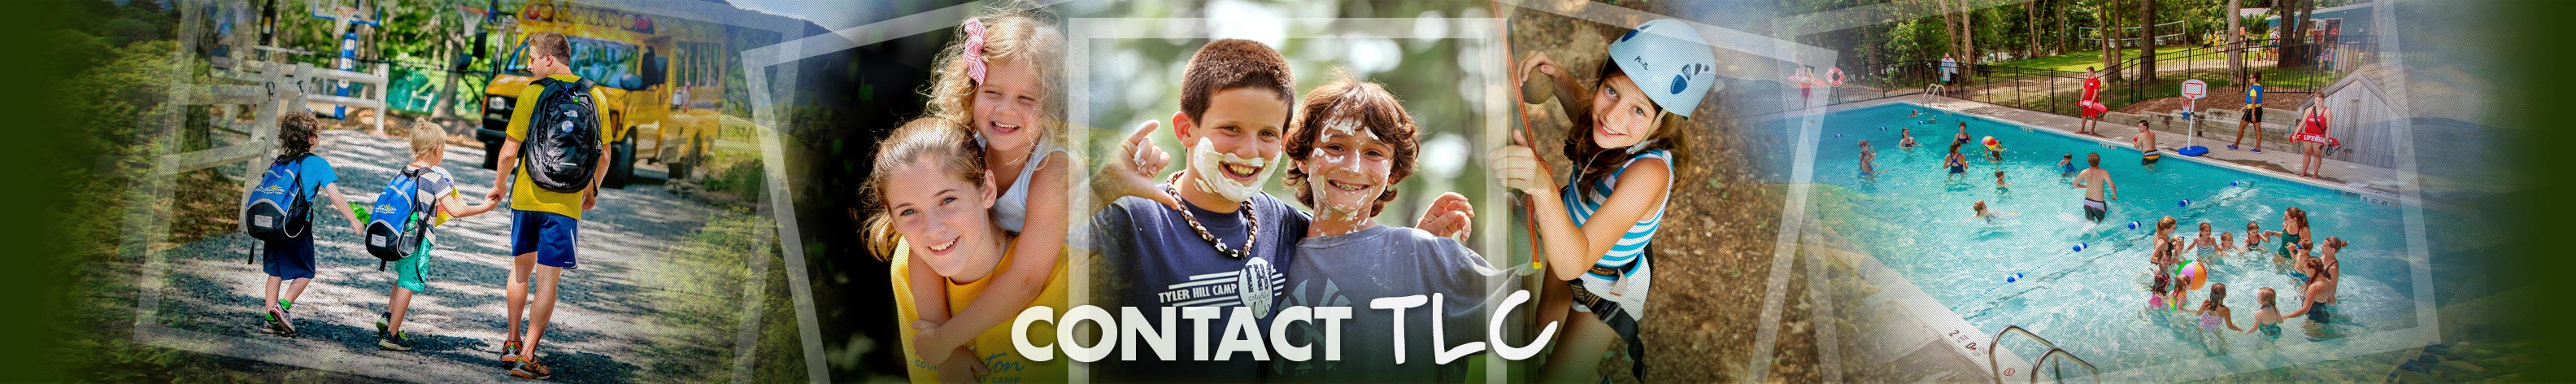 Contact TLC